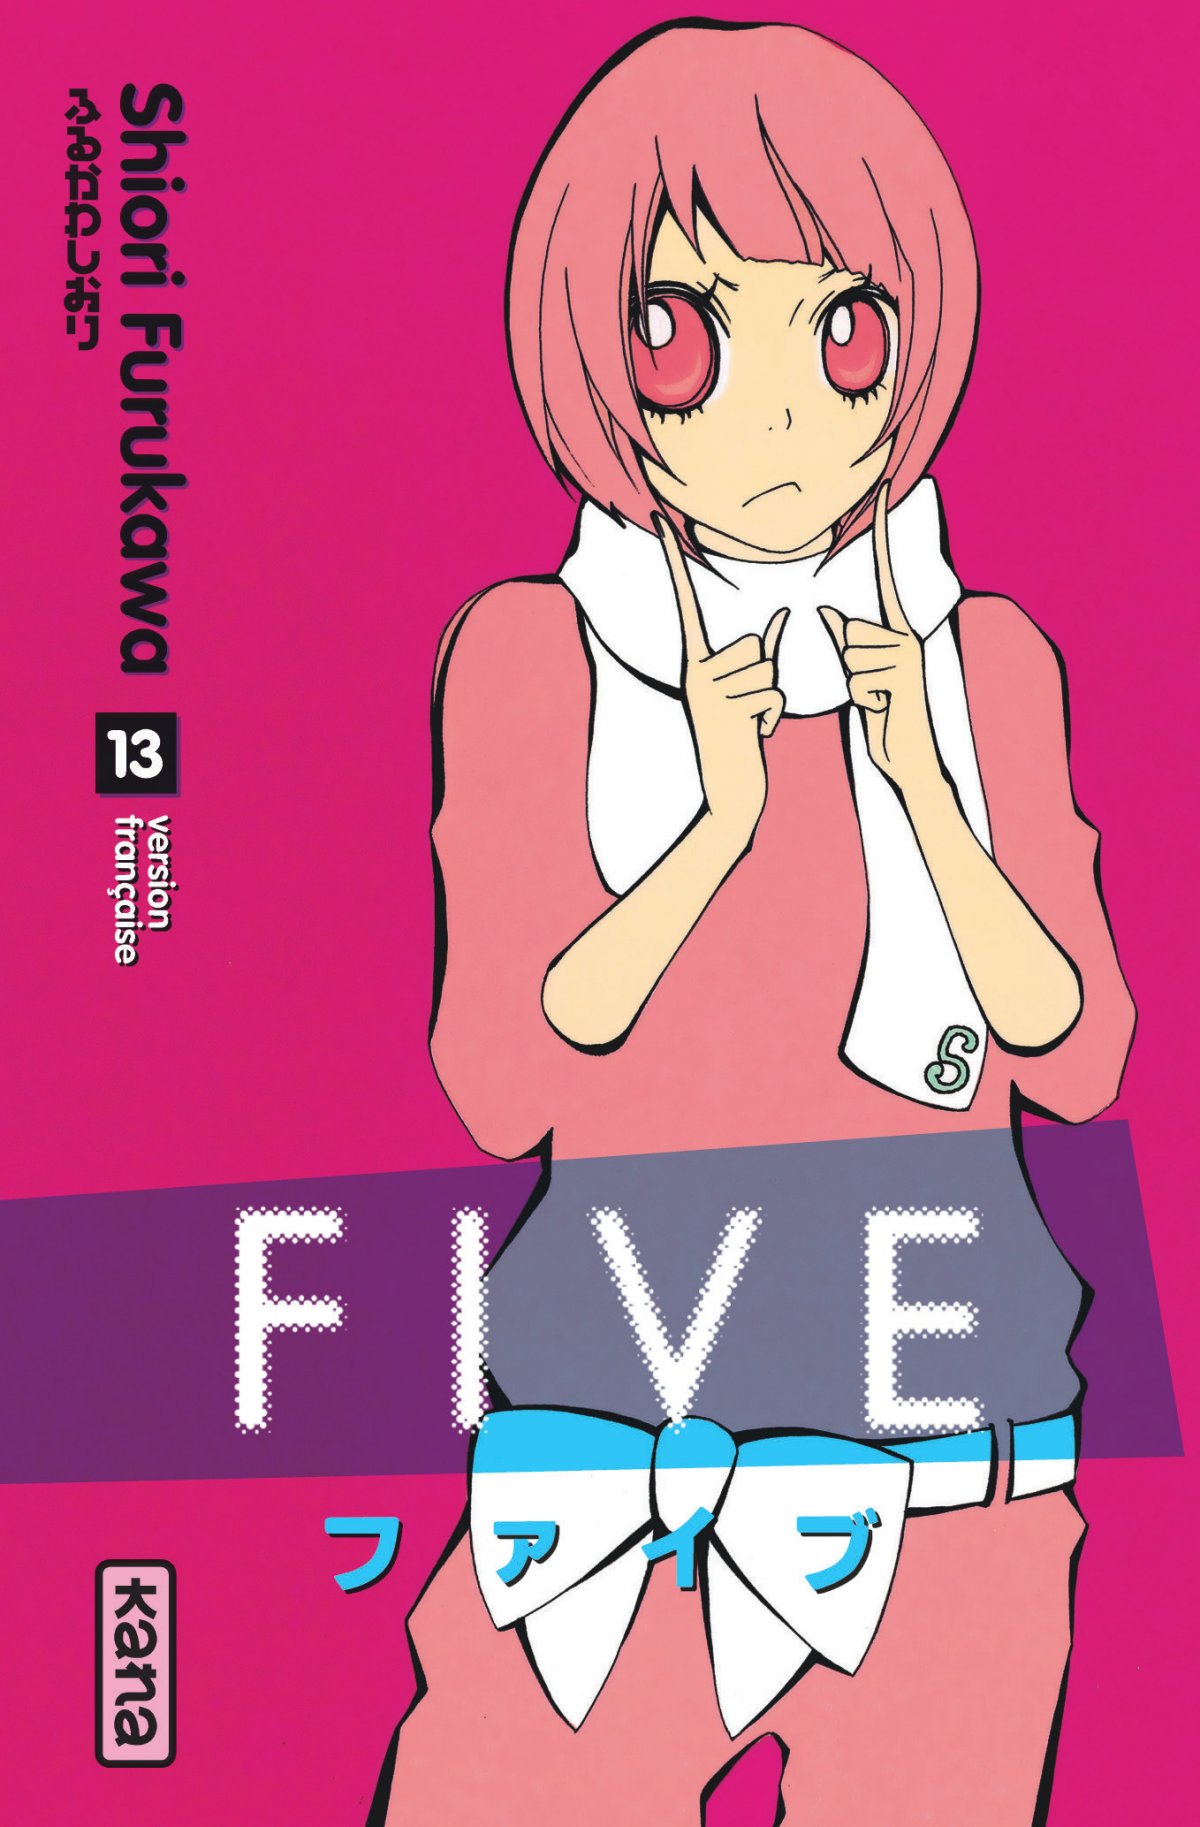 five13